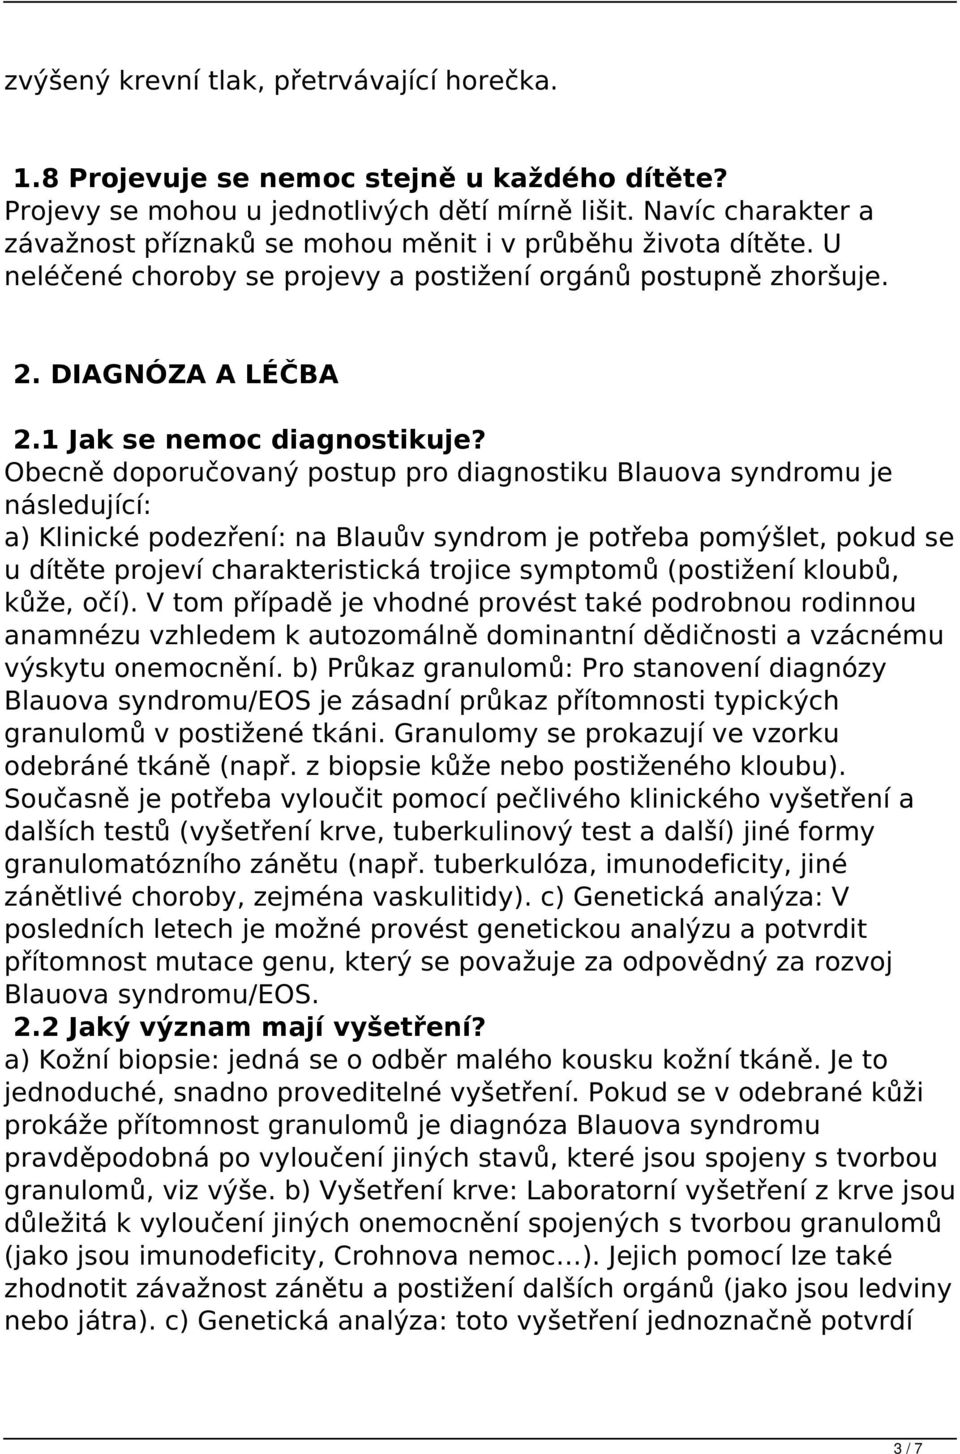 Obecně doporučovaný postup pro diagnostiku Blauova syndromu je následující: a) Klinické podezření: na Blauův syndrom je potřeba pomýšlet, pokud se u dítěte projeví charakteristická trojice symptomů